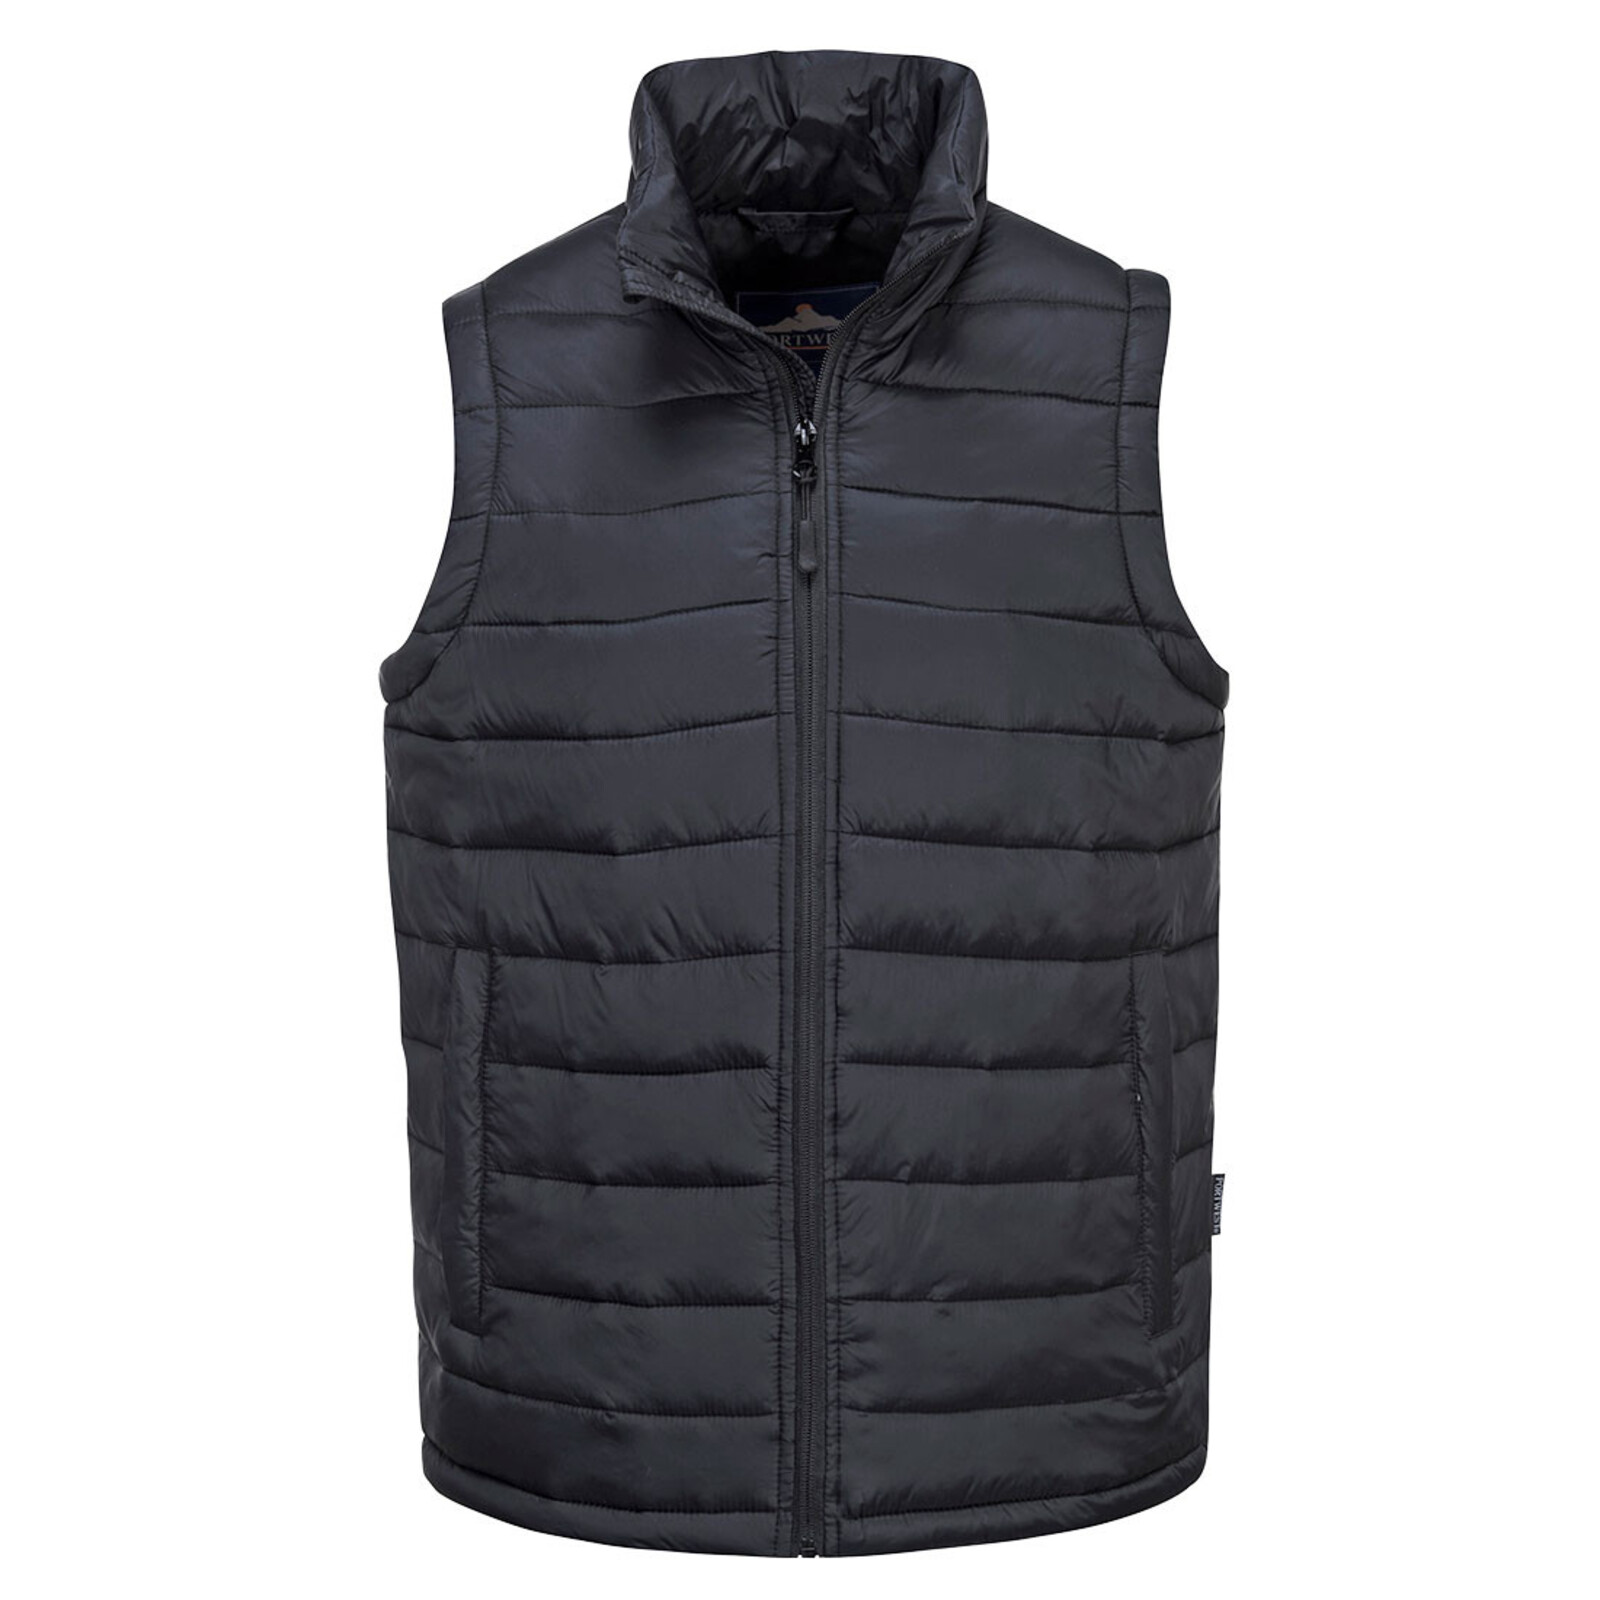 Pánska zateplená termo vesta Portwest Aspen S544 - veľkosť: S, farba: čierna